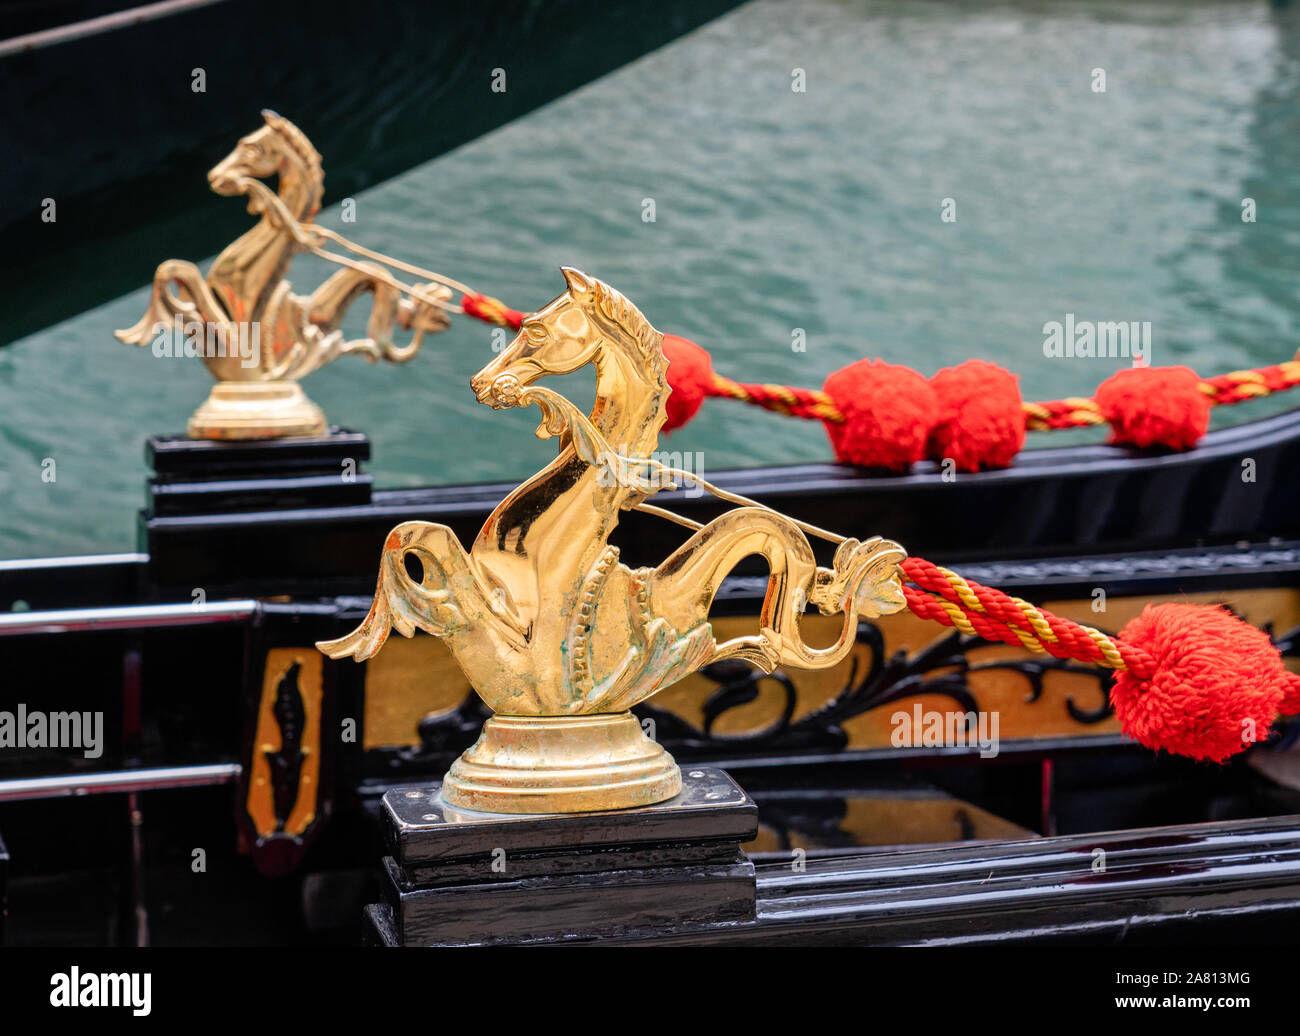 Les hippocampes d'or et d'écarlate pommeaux ornant une gondole à Venise Italie Banque D'Images